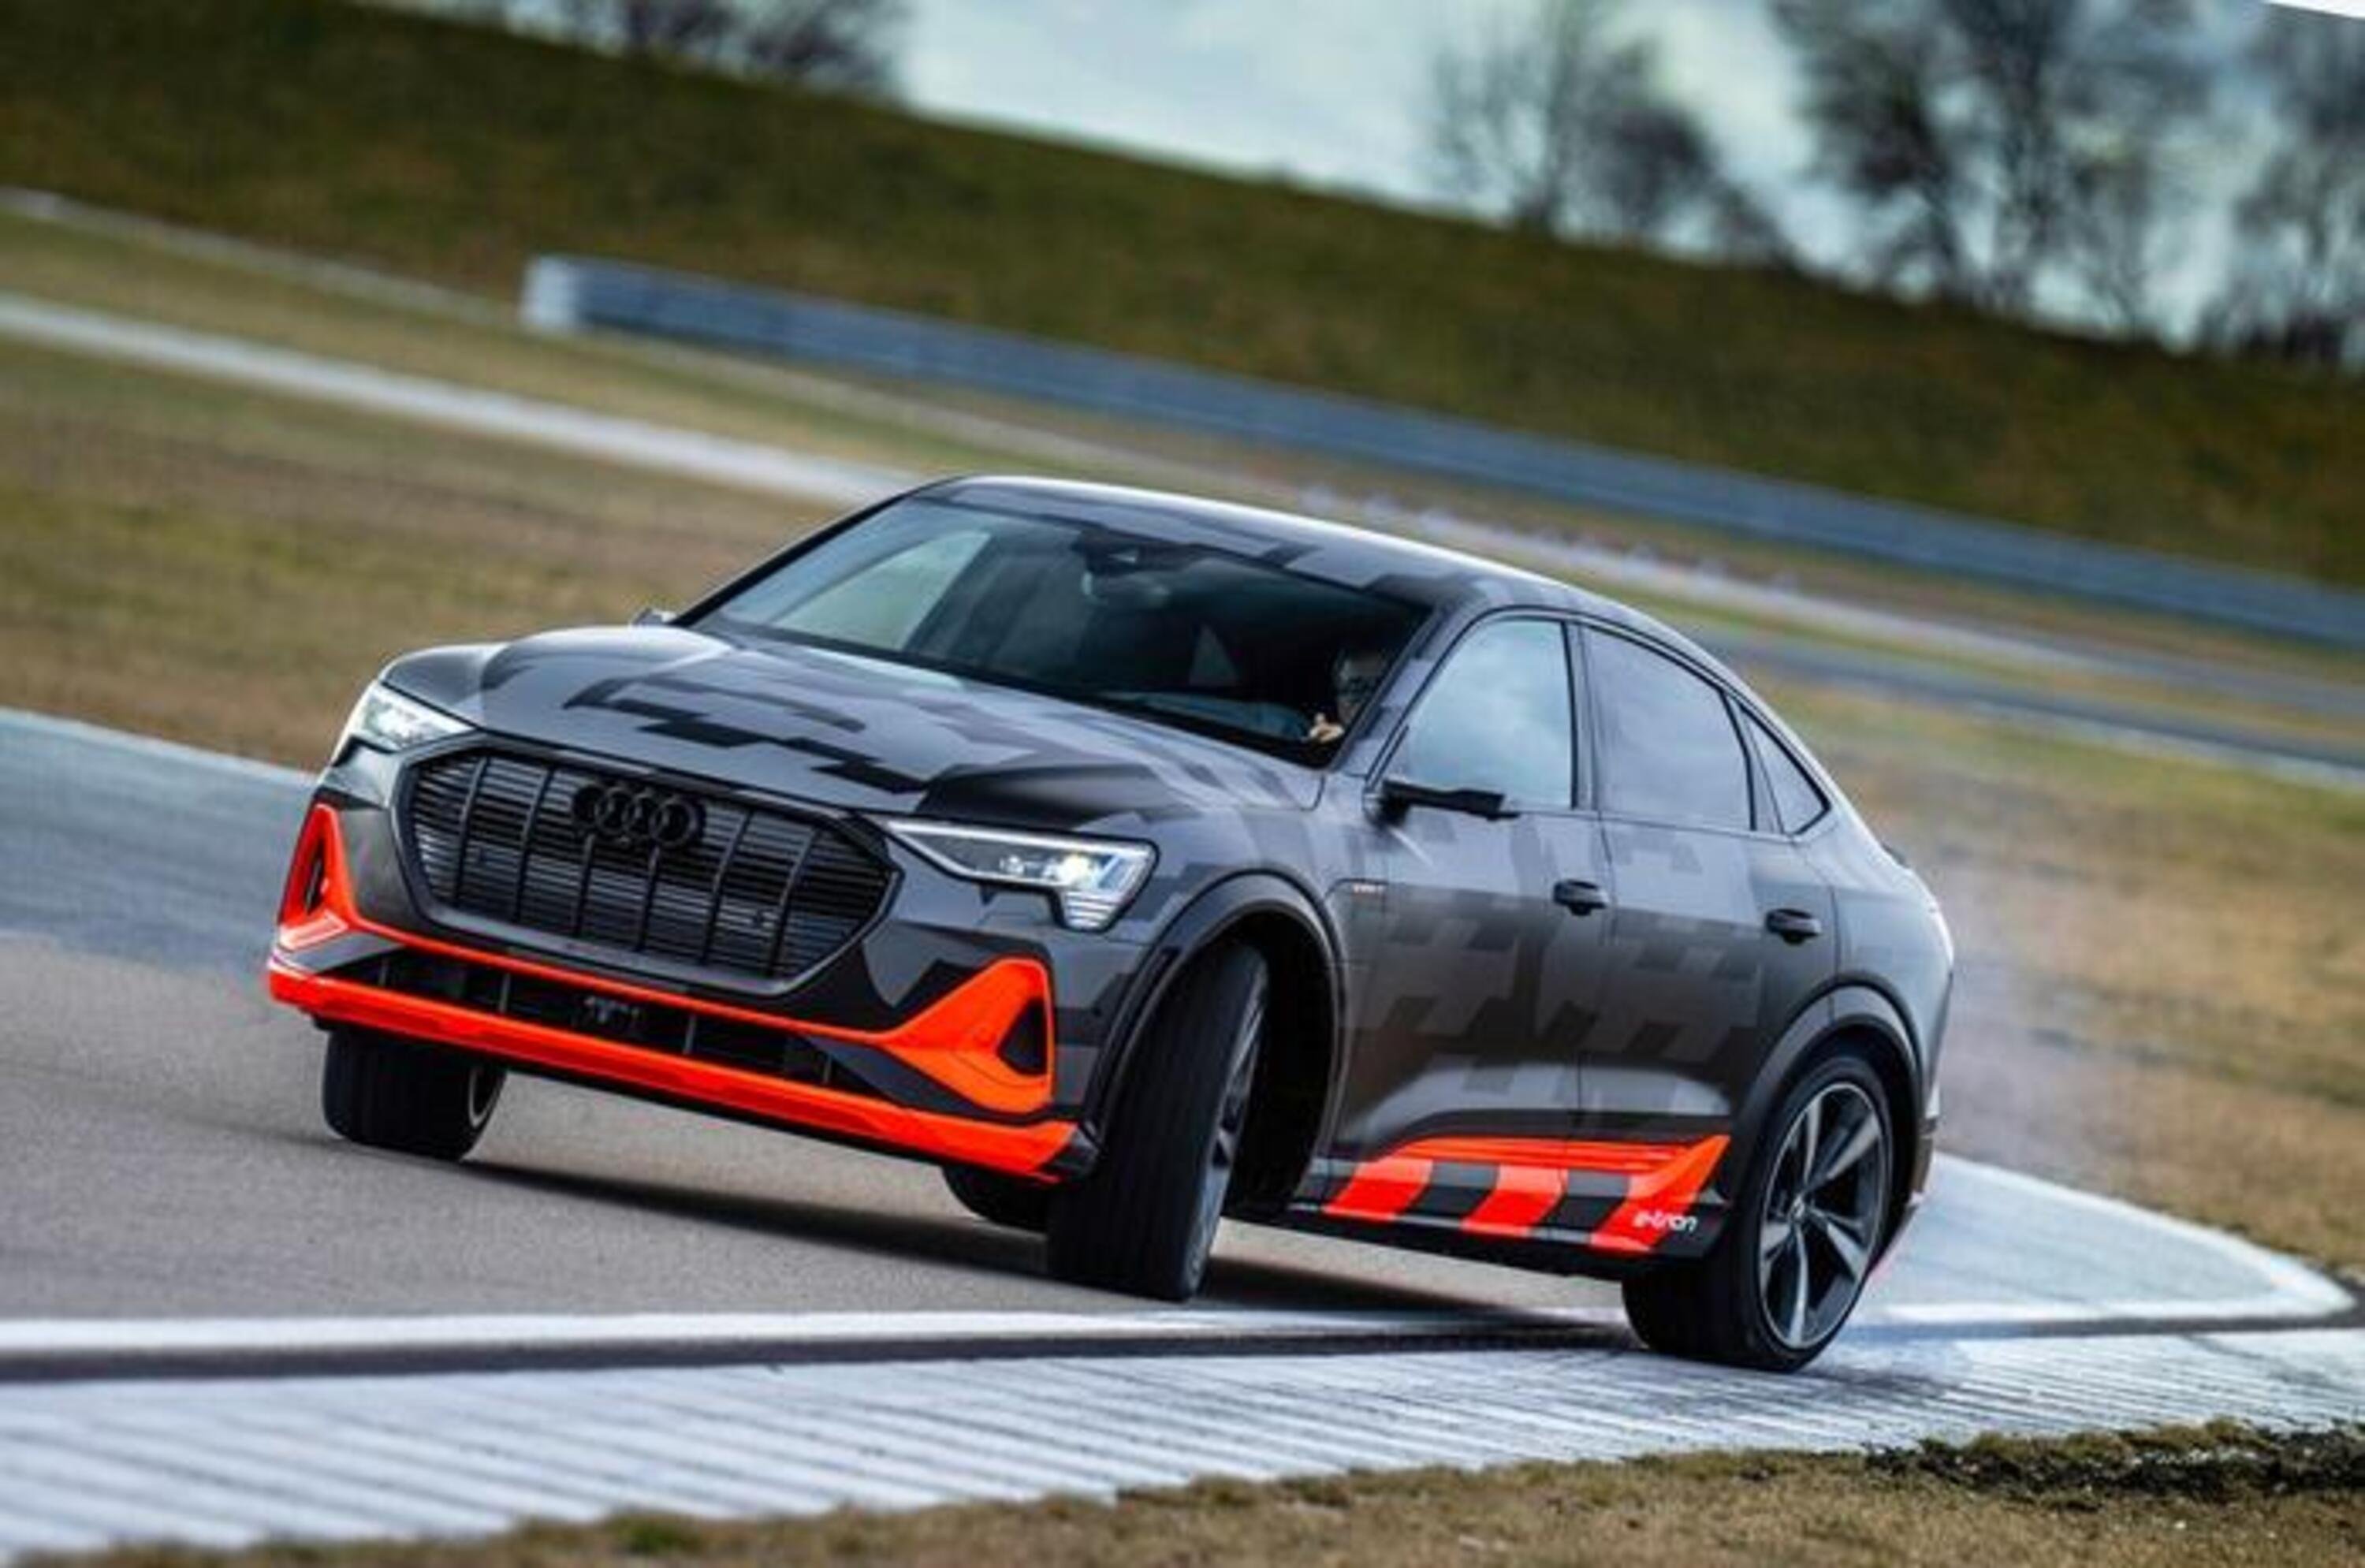 Audi e-tron S ed e-tron S Sportback, le elettriche ad alte prestazioni 